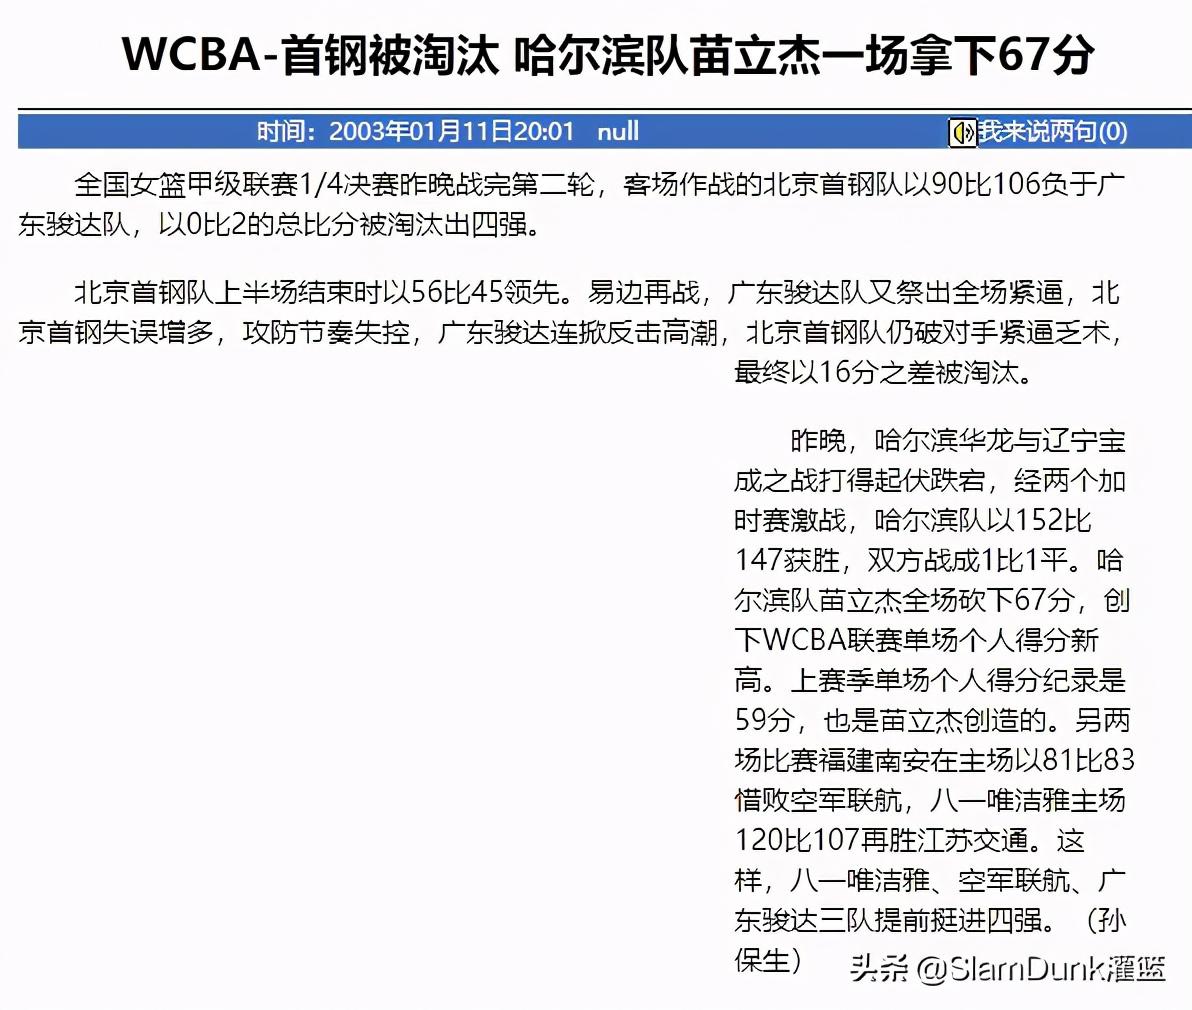 苗立杰wnba数据 「苗立杰」WNBA&WCBA双料总冠军(2)